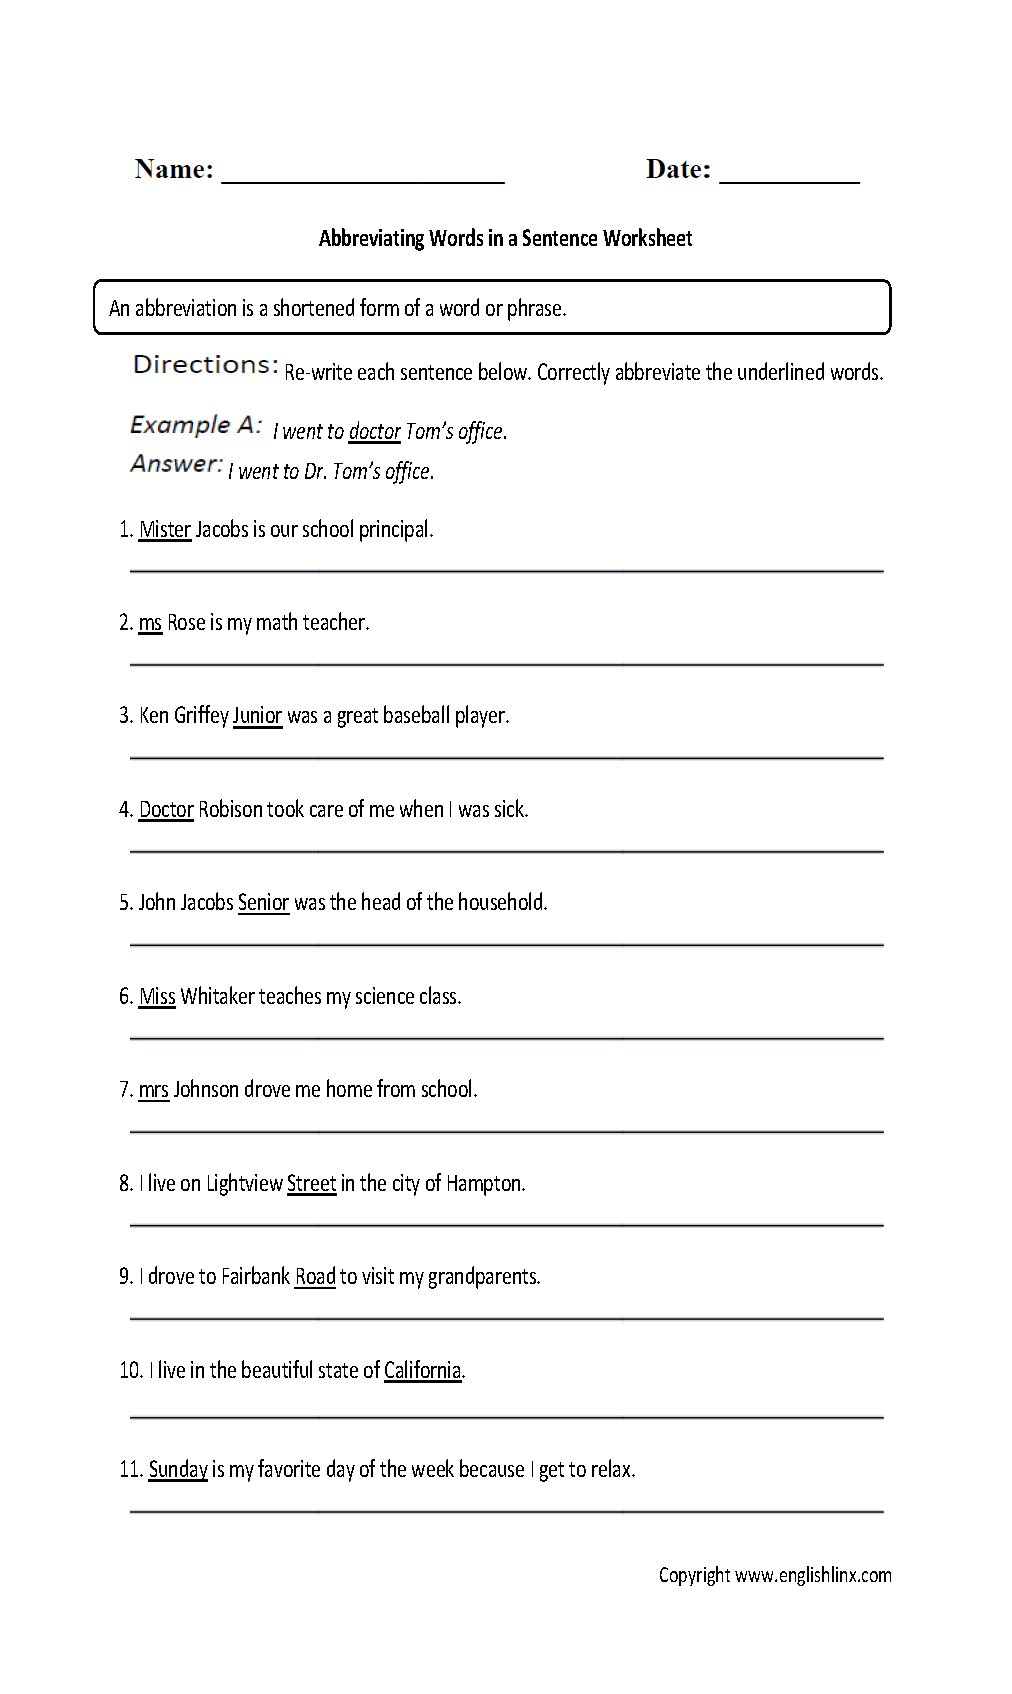 free-9th-grade-english-worksheets-printable-ronald-worksheets